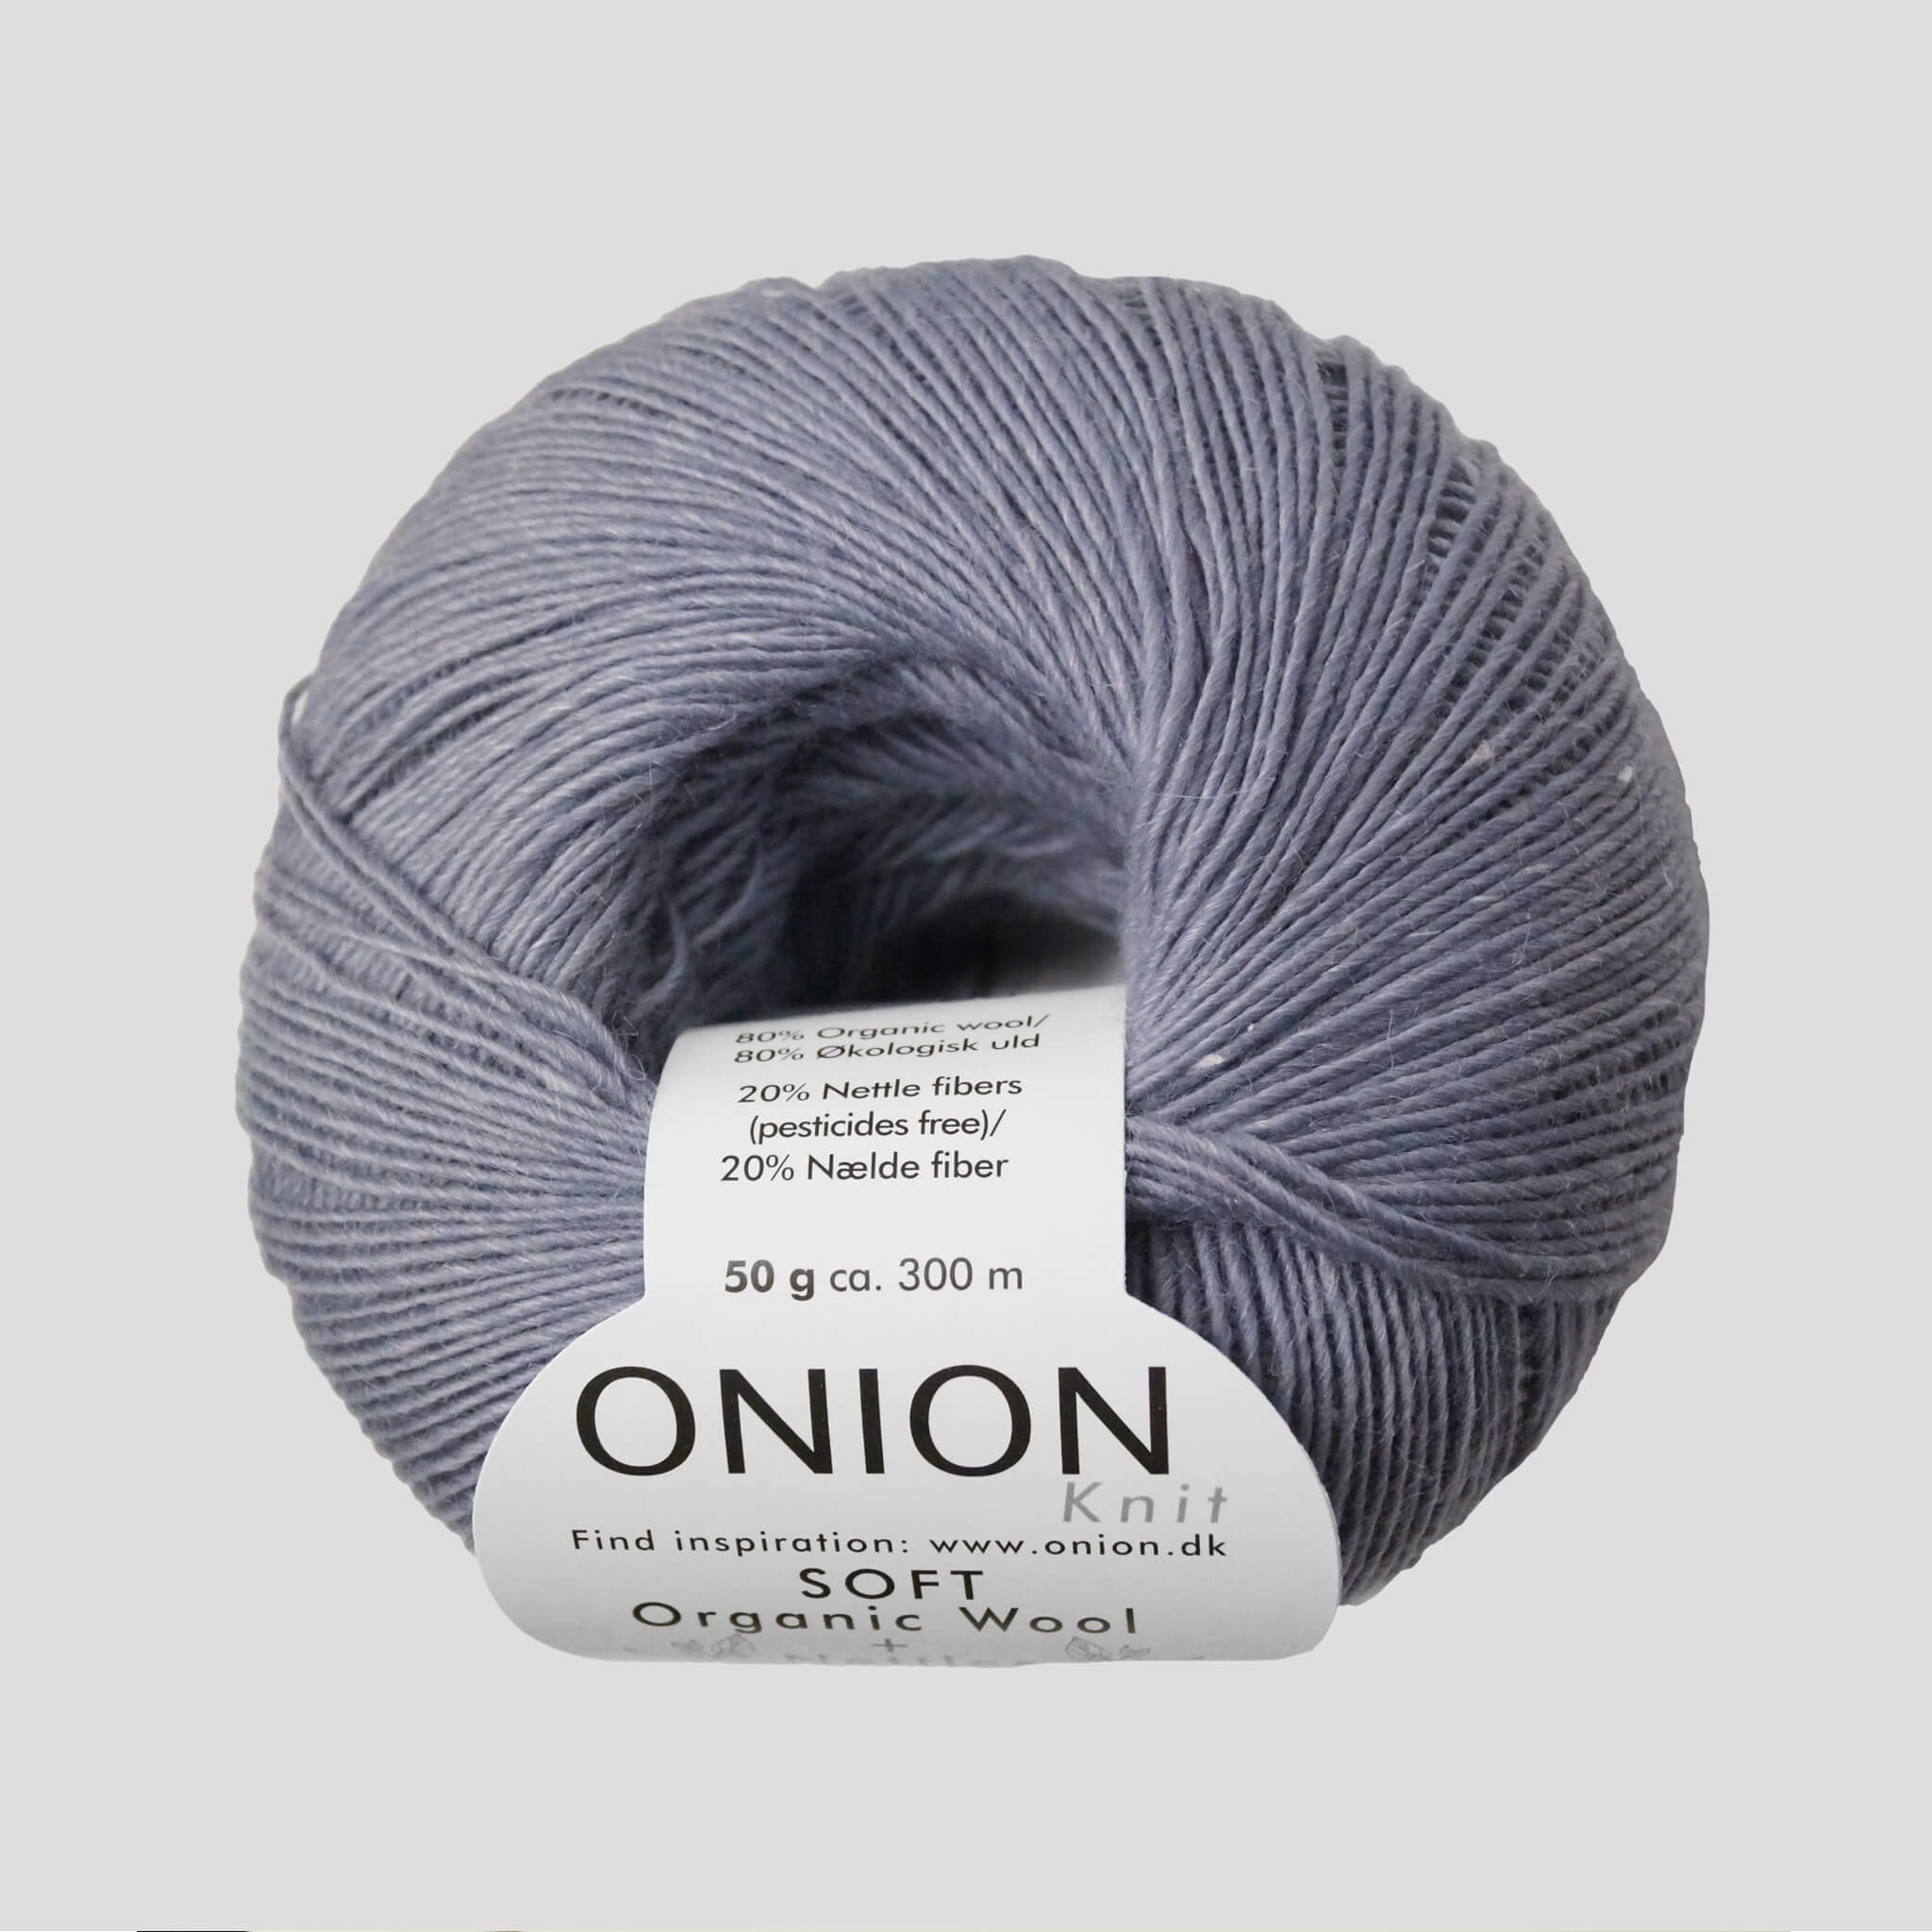 Tradition Vedholdende Preference Onion Soft Organic Wool + Nettles - Onion Soft Organic Wool + Nettles 1505  Grå til 59 DKK